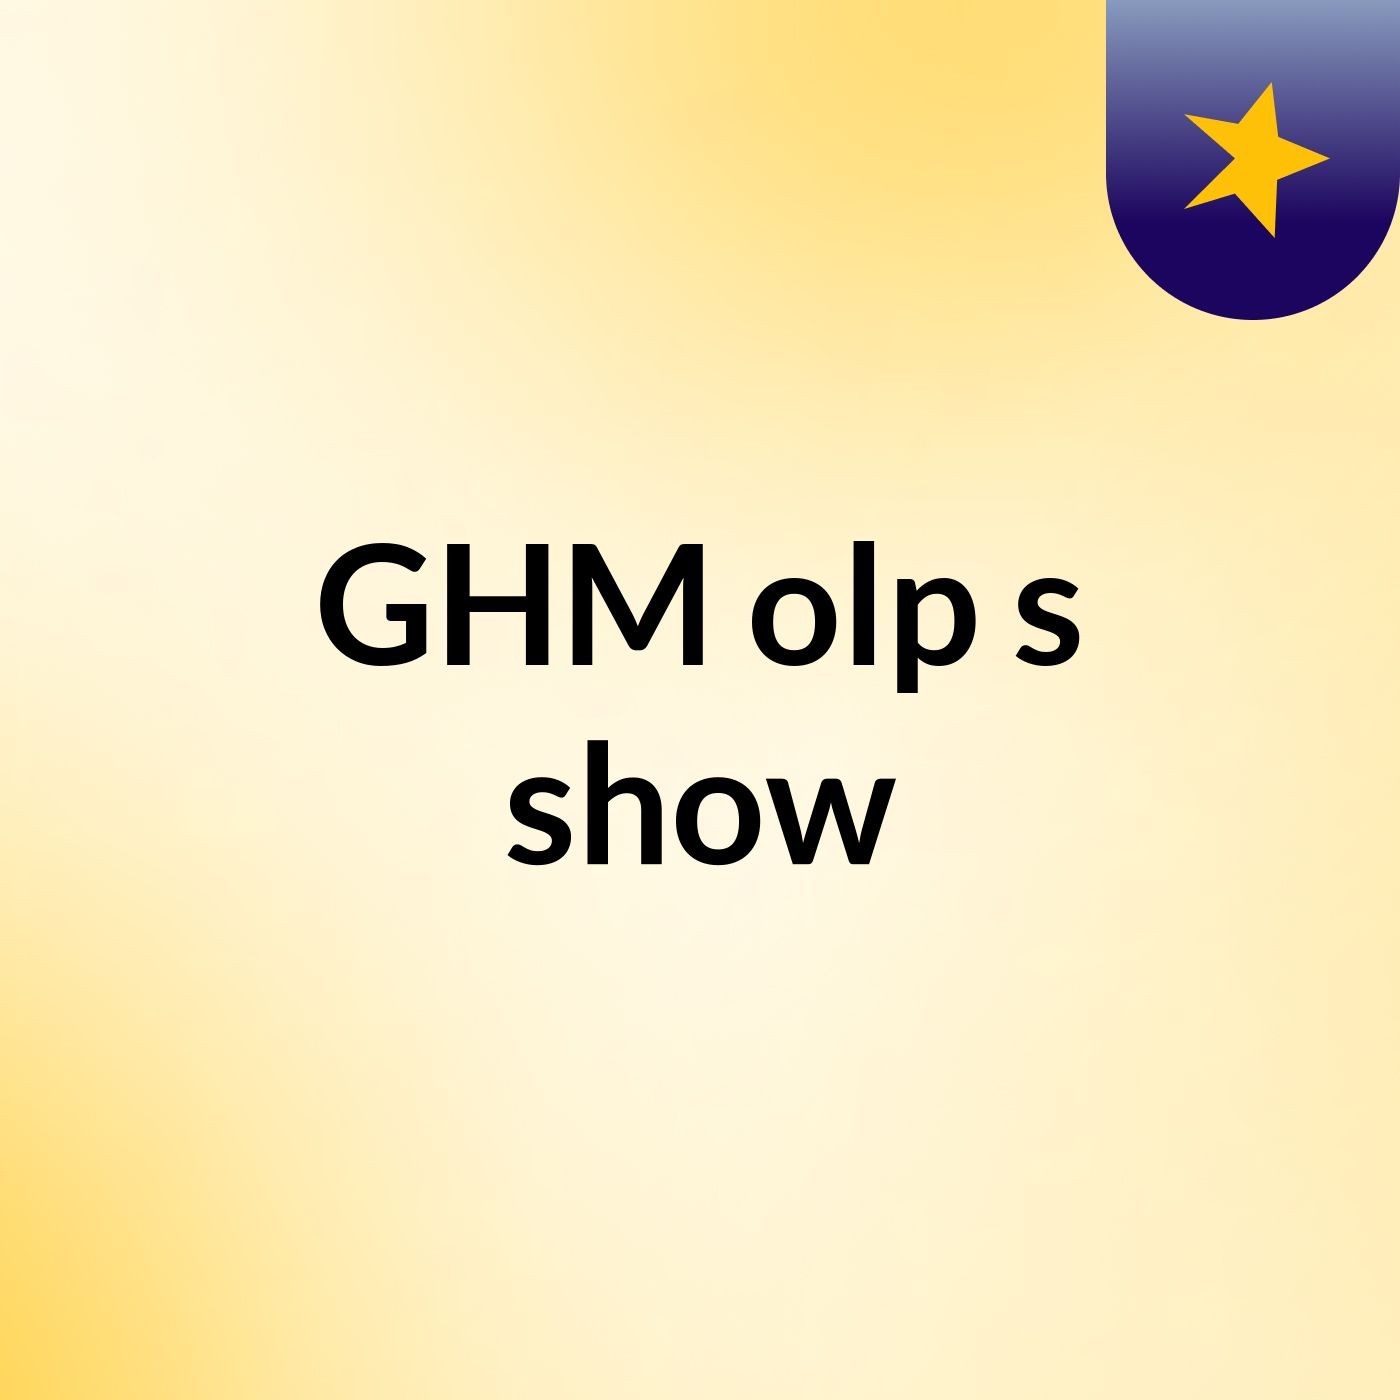 GHM olp's show:GHM olp